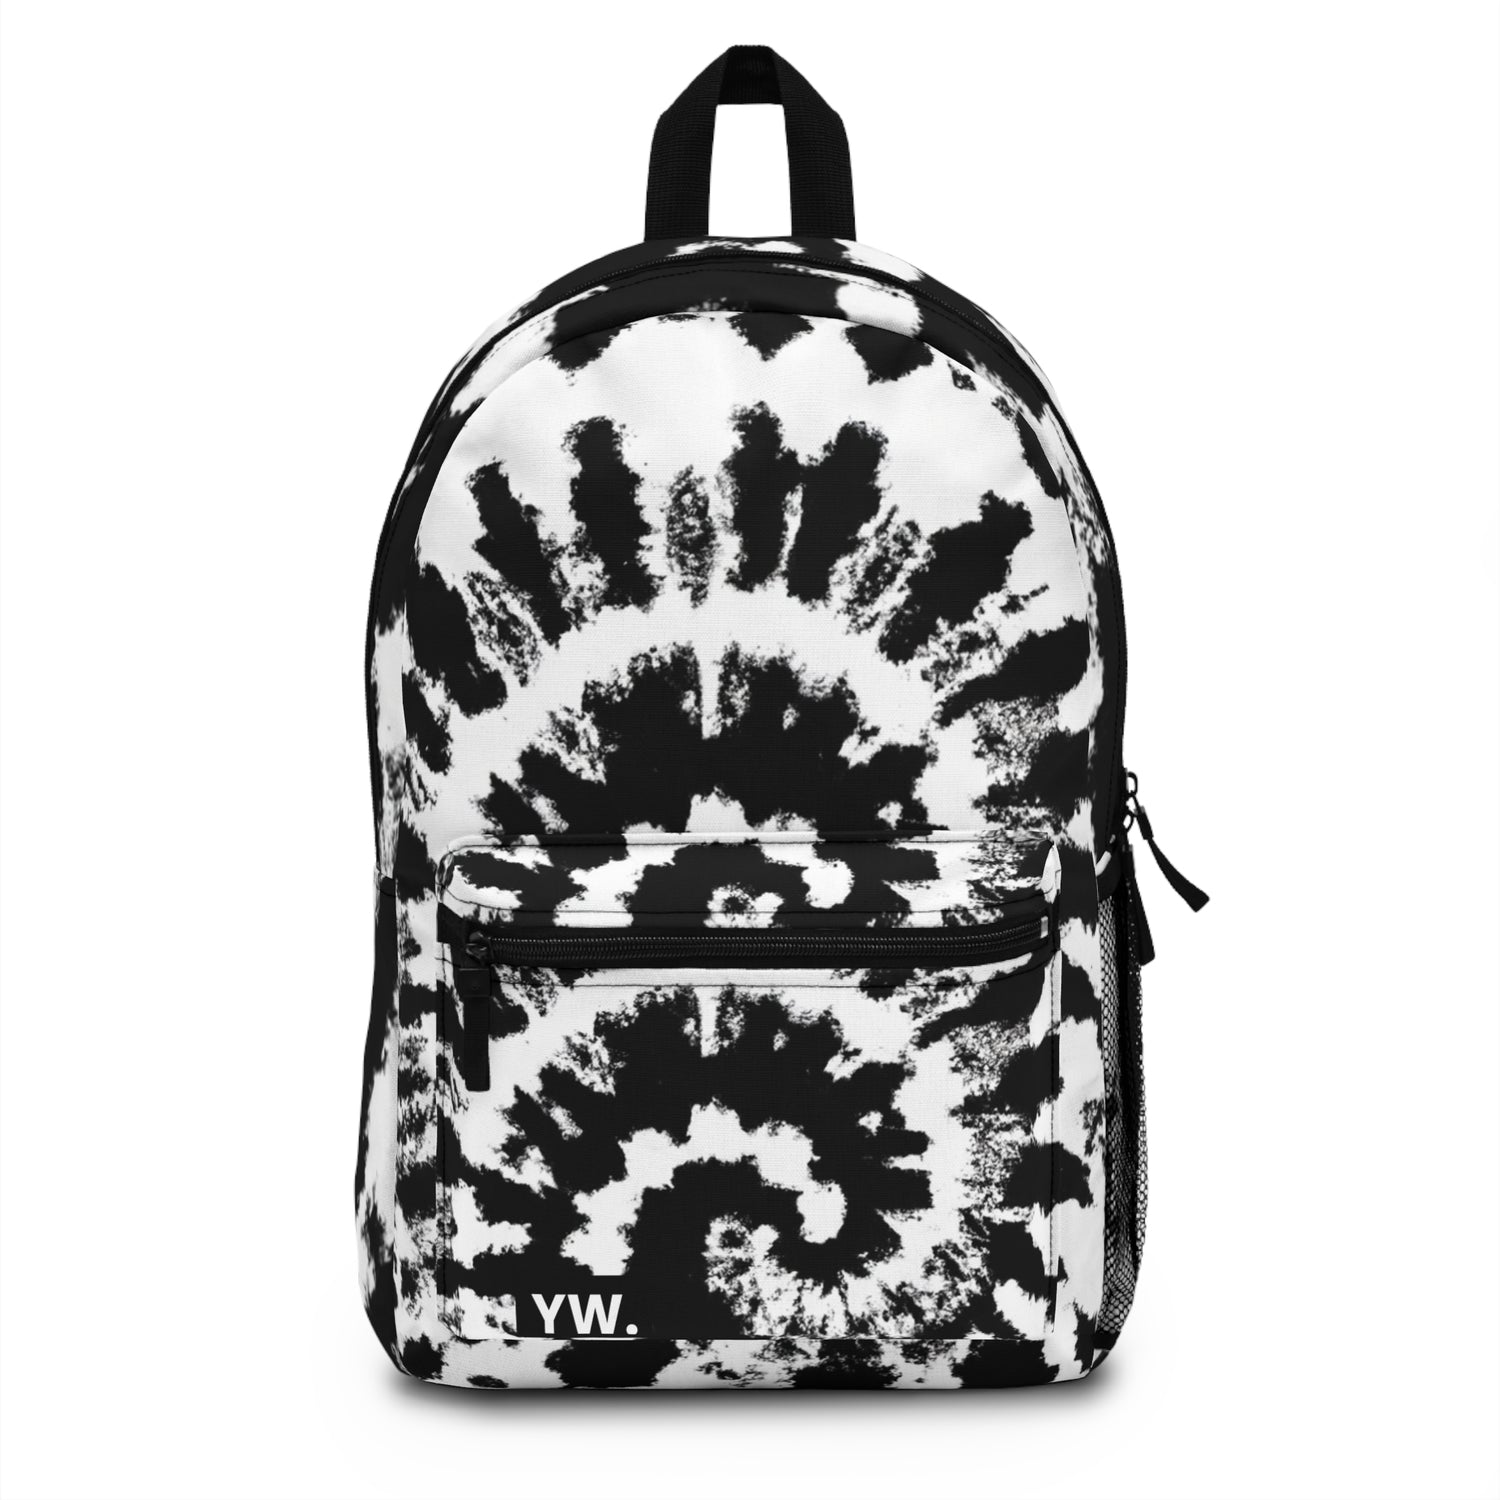 Black & White Tie Dye Design Backpacks